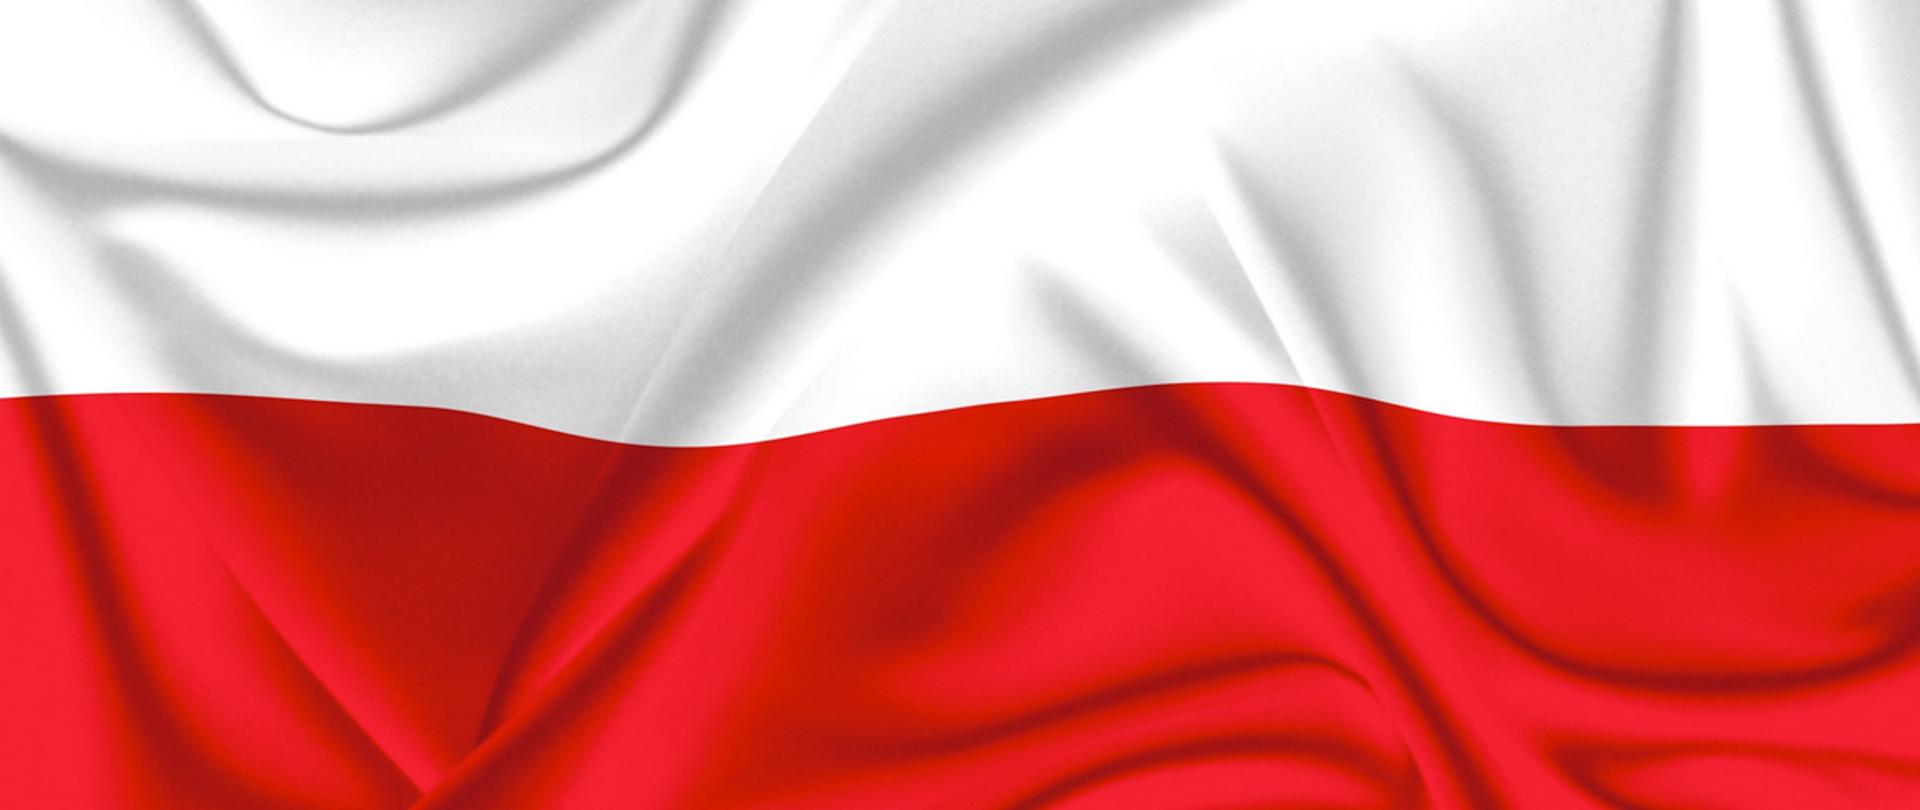 Na fotografii powiewająca flaga Polski składająca się z dwóch połączonych prostokątów - białego na górze, czerwonego na dole.